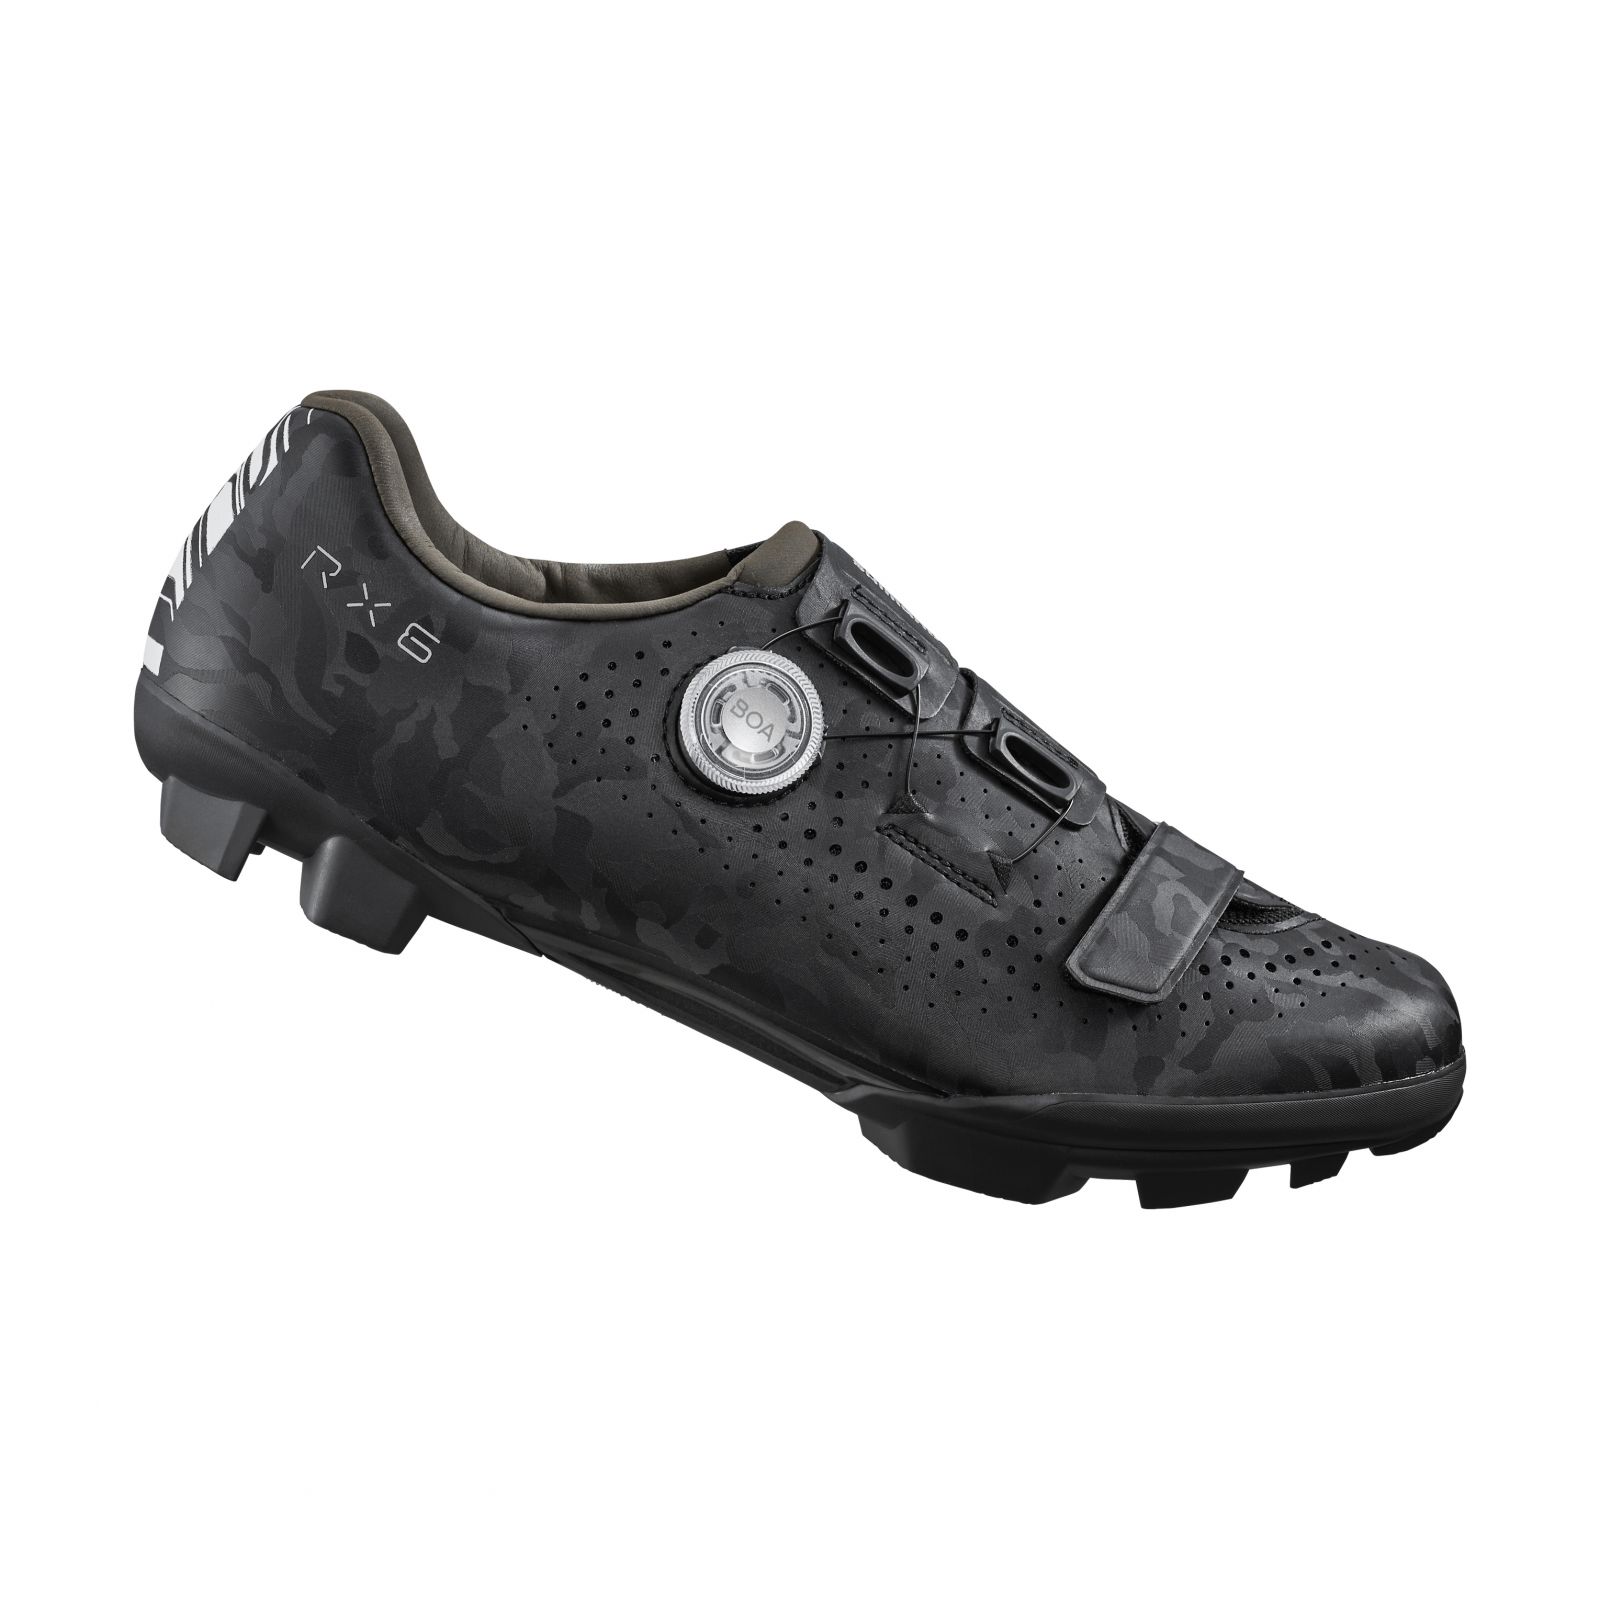 SHIMANO gravel obuv SH-RX600, pánská, černá, 41